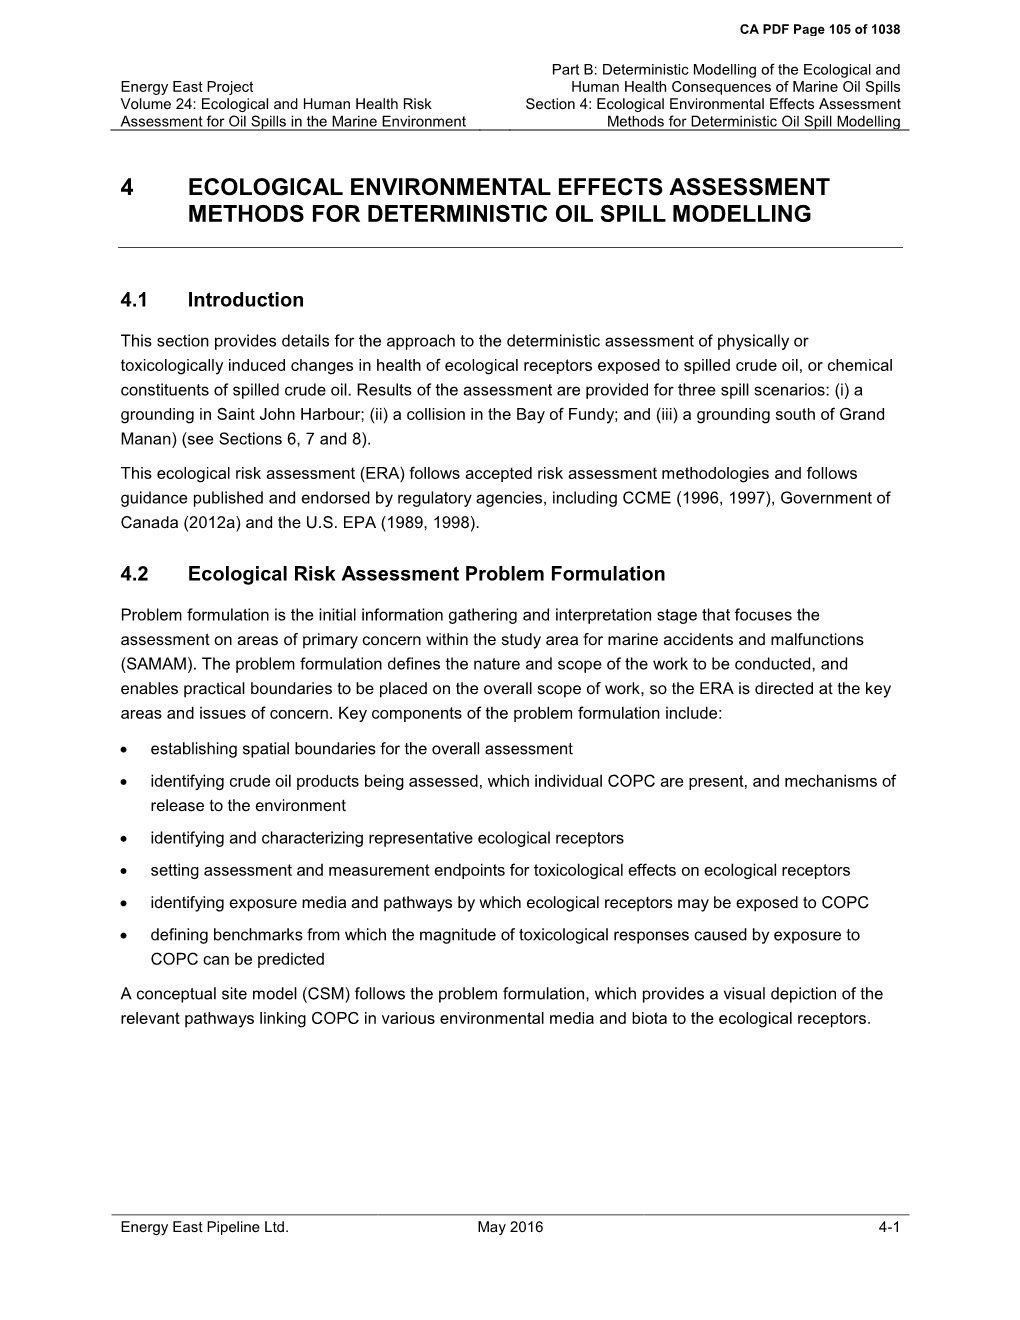 4 Ecological Environmental Effects Assessment Methods for Deterministic Oil Spill Modelling